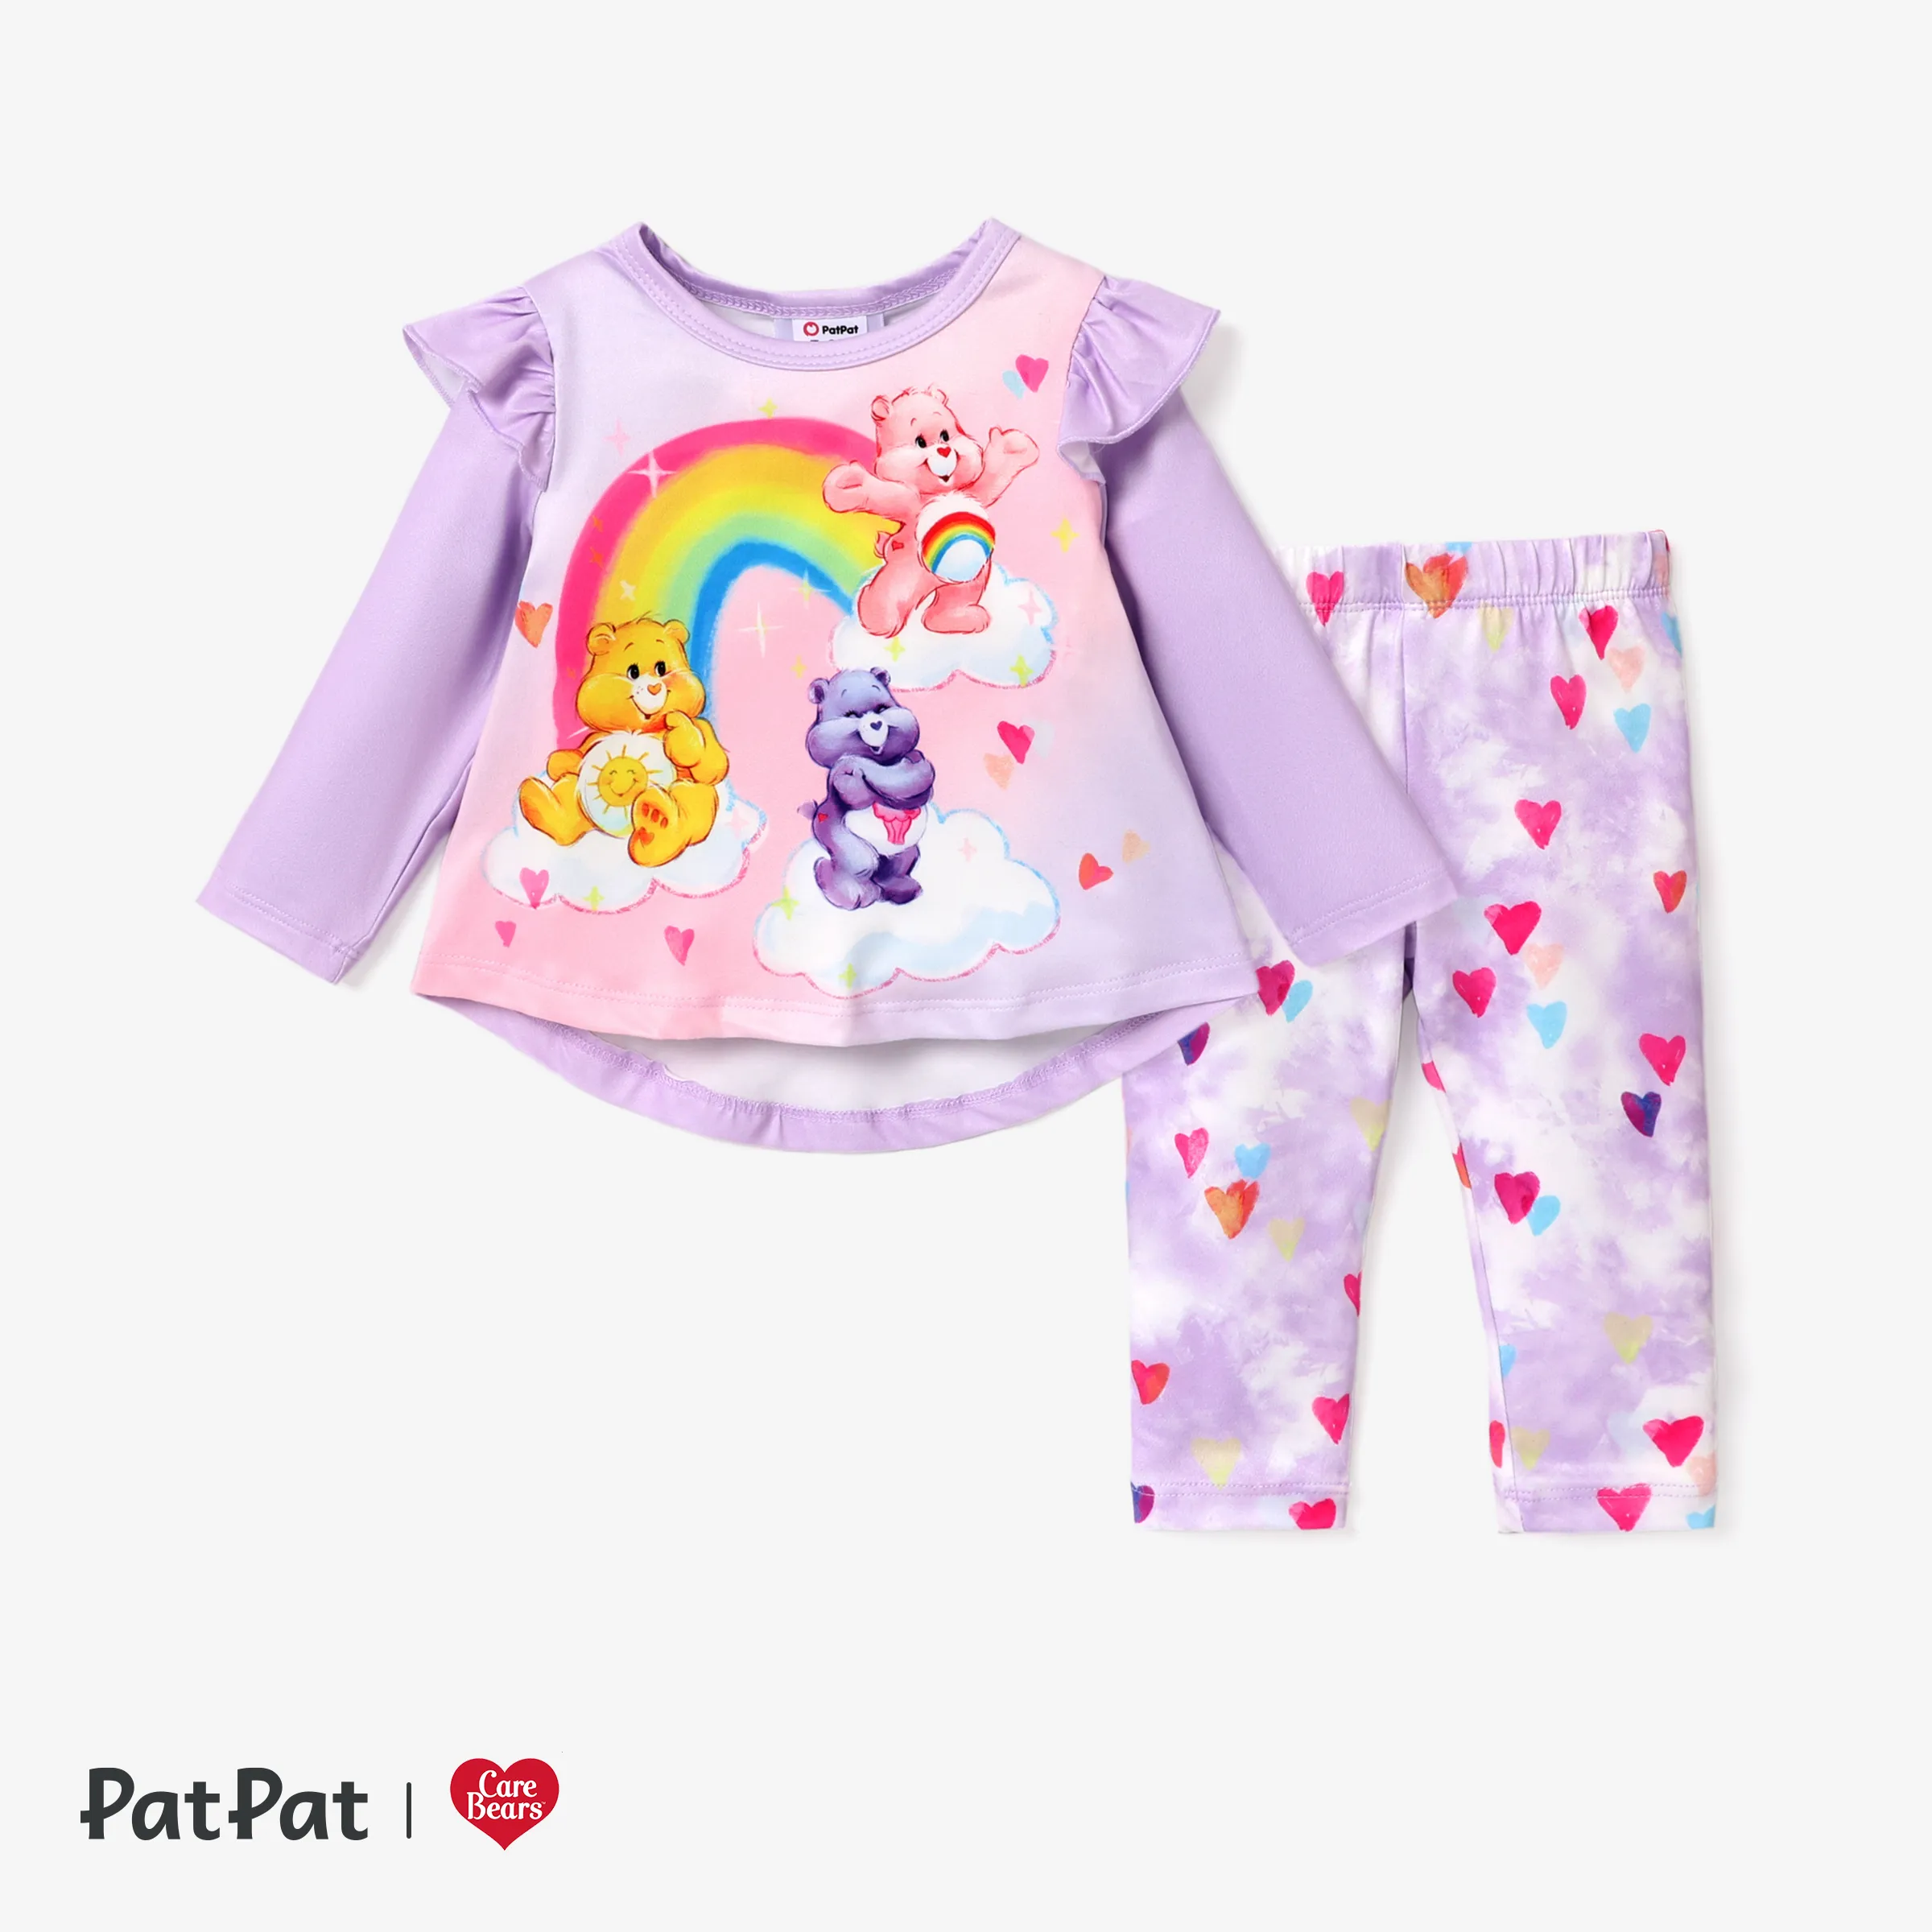 Care Bears Baby Girl Heart Print Tie -dye Top Or Pants